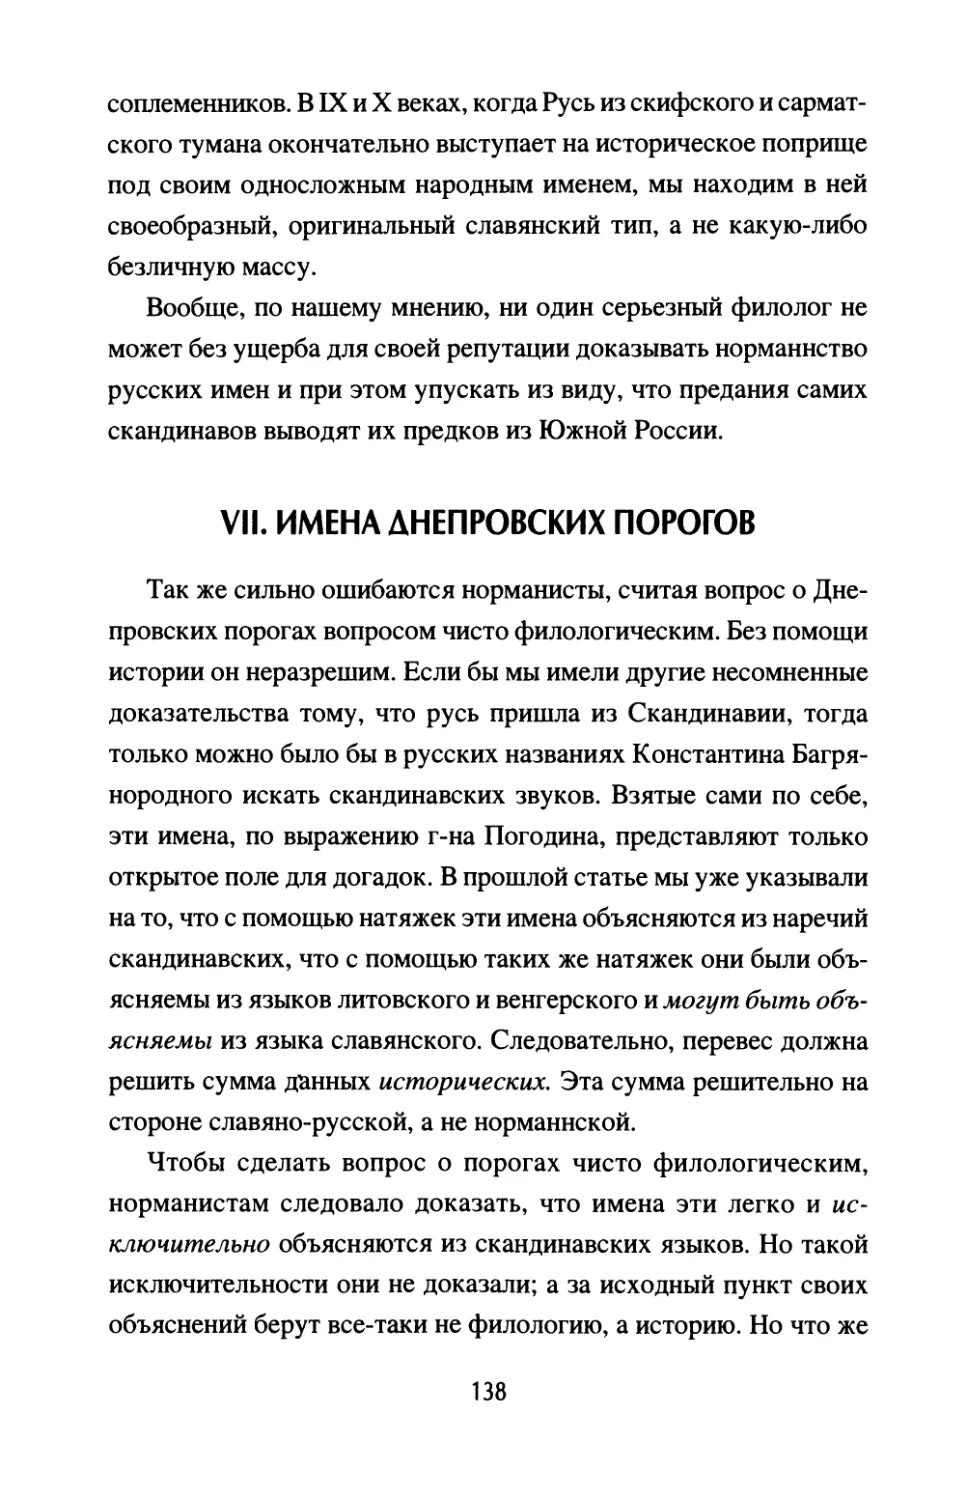 VII. Имена Днепровских порогов